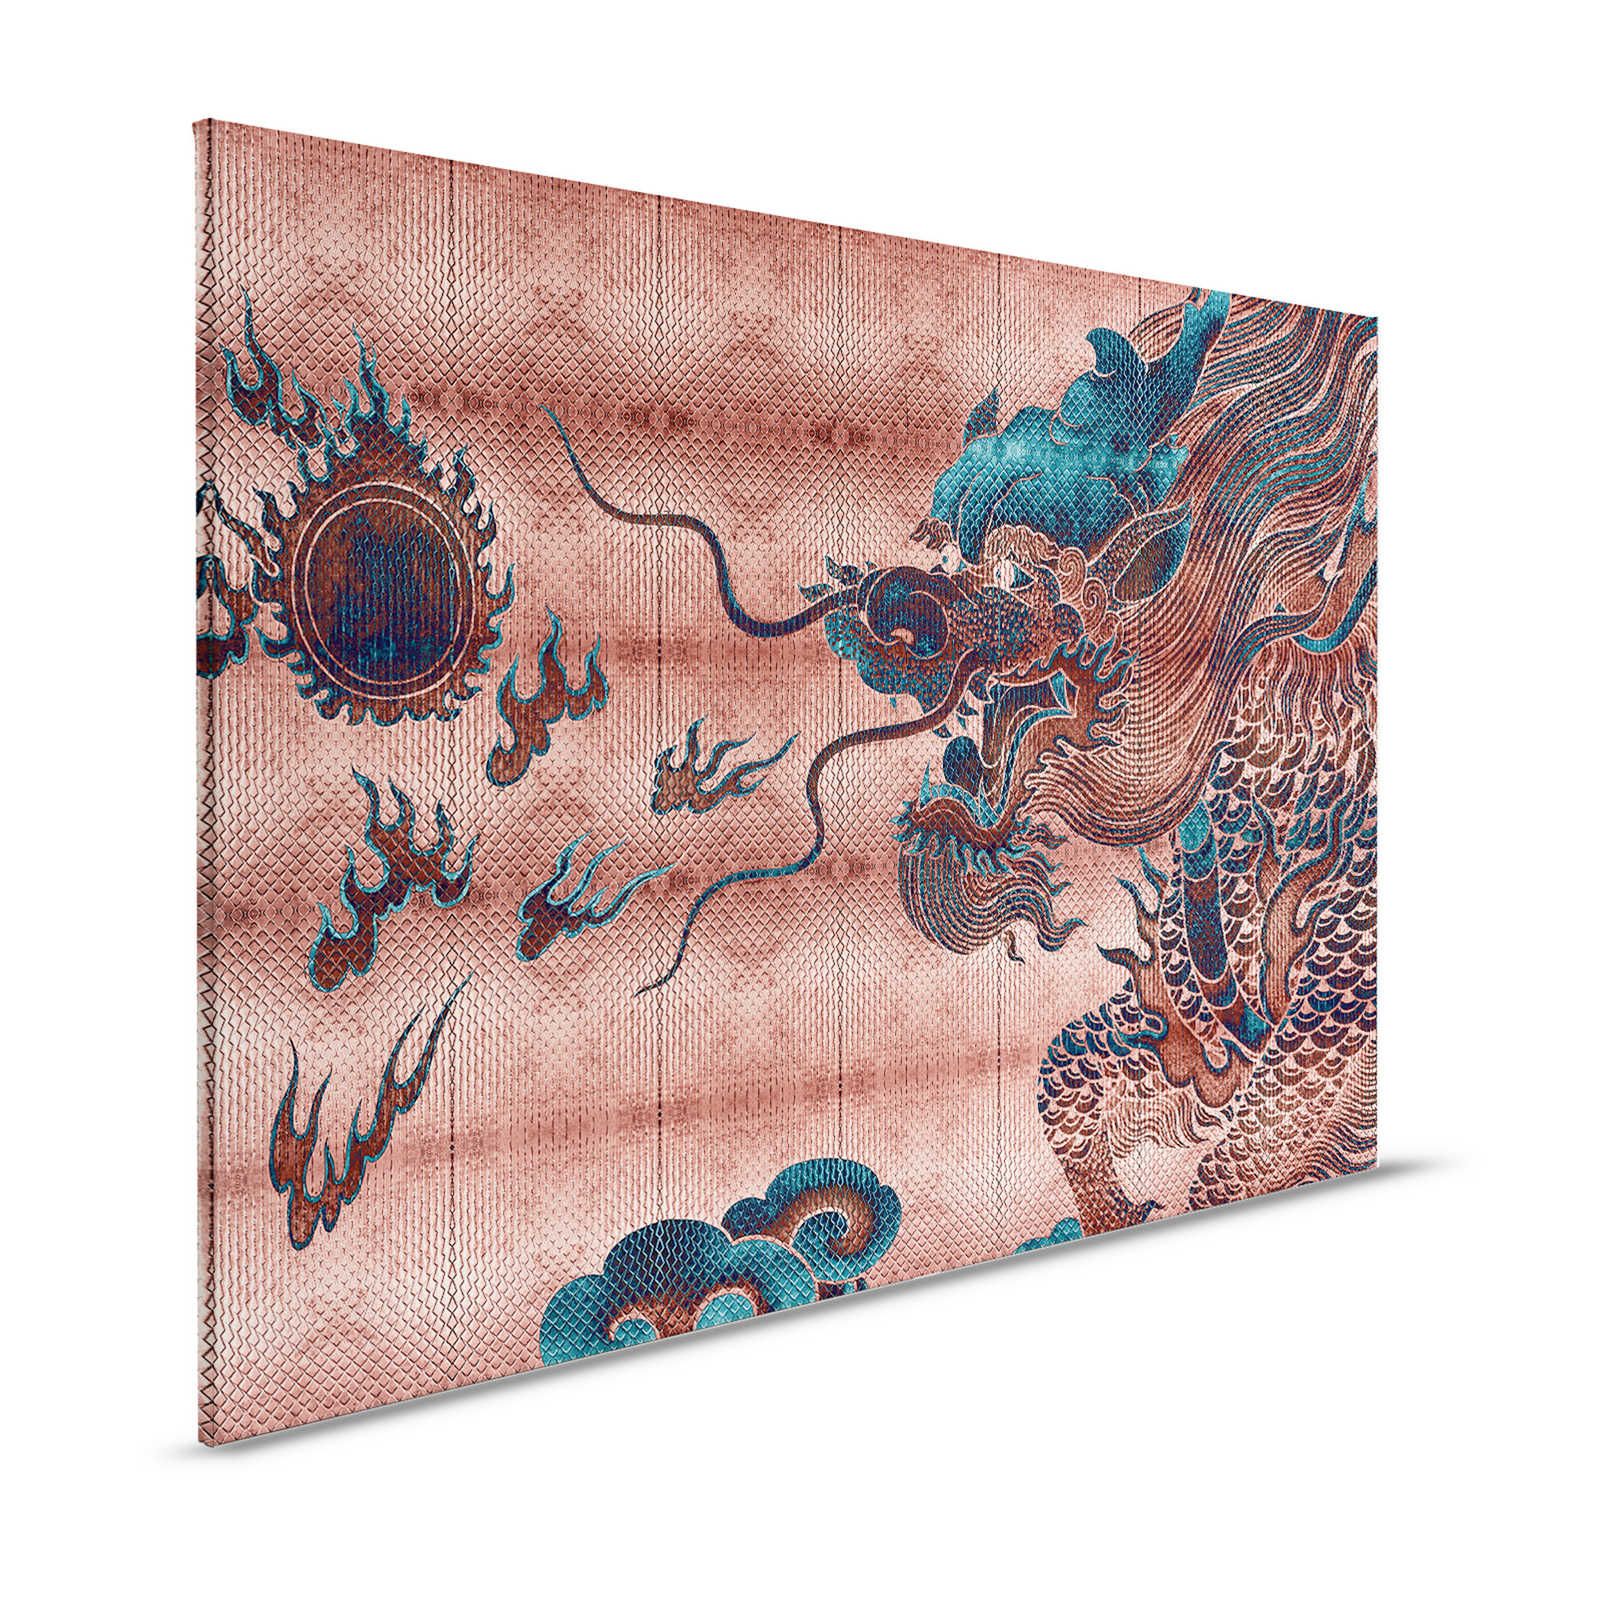 Shenzen 1 - Cuadro en lienzo Dragon Asian Syle con colores metalizados - 1,20 m x 0,80 m
